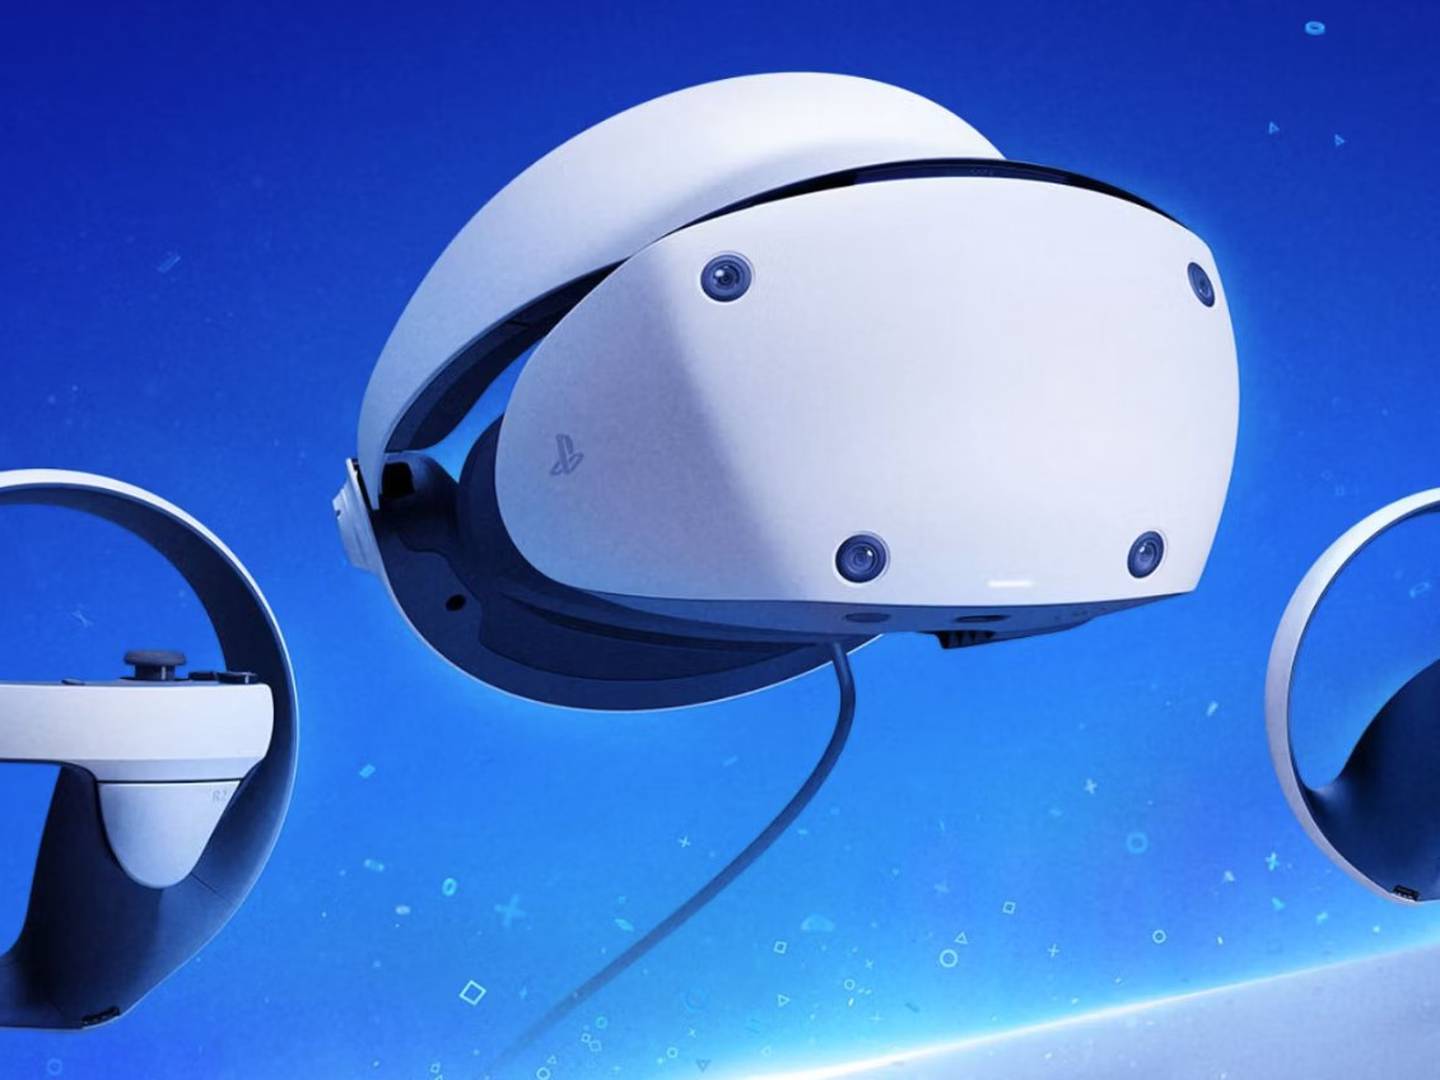 Llega PlayStation VR 2, el nuevo casco de realidad virtual de Sony: cómo es  - El Cronista